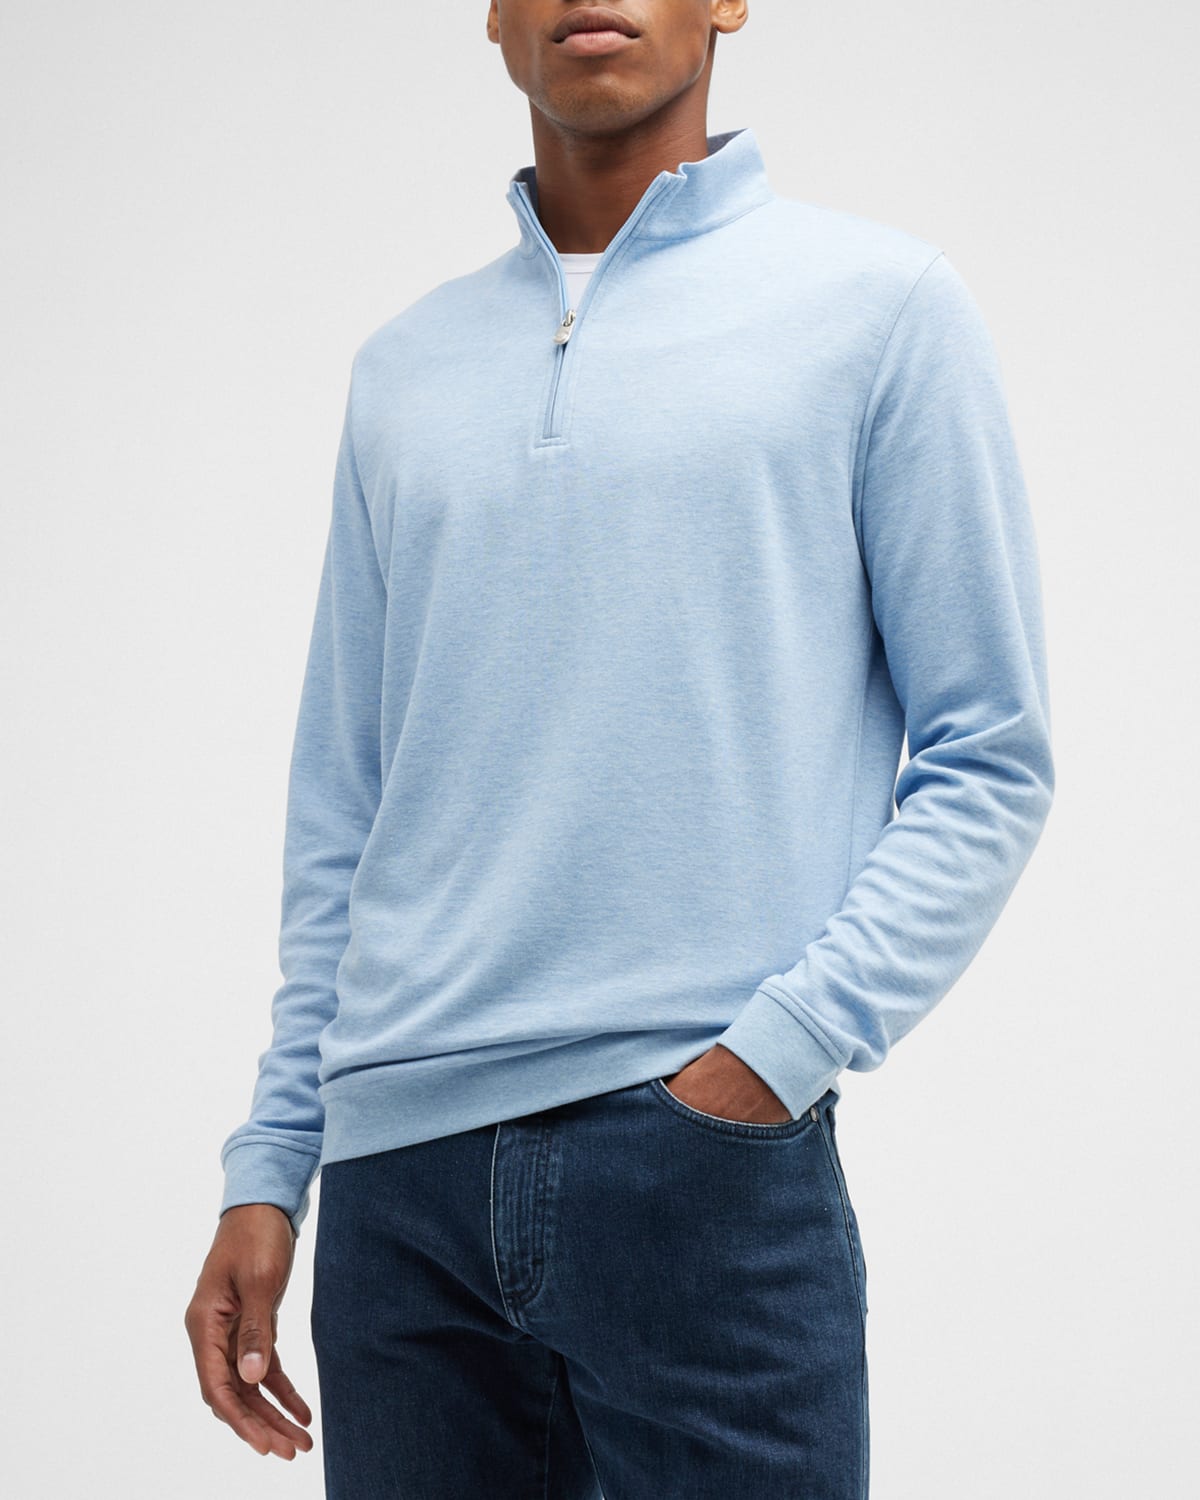 Peter Millar Men's Crown Comfort Half-Zip Sweater